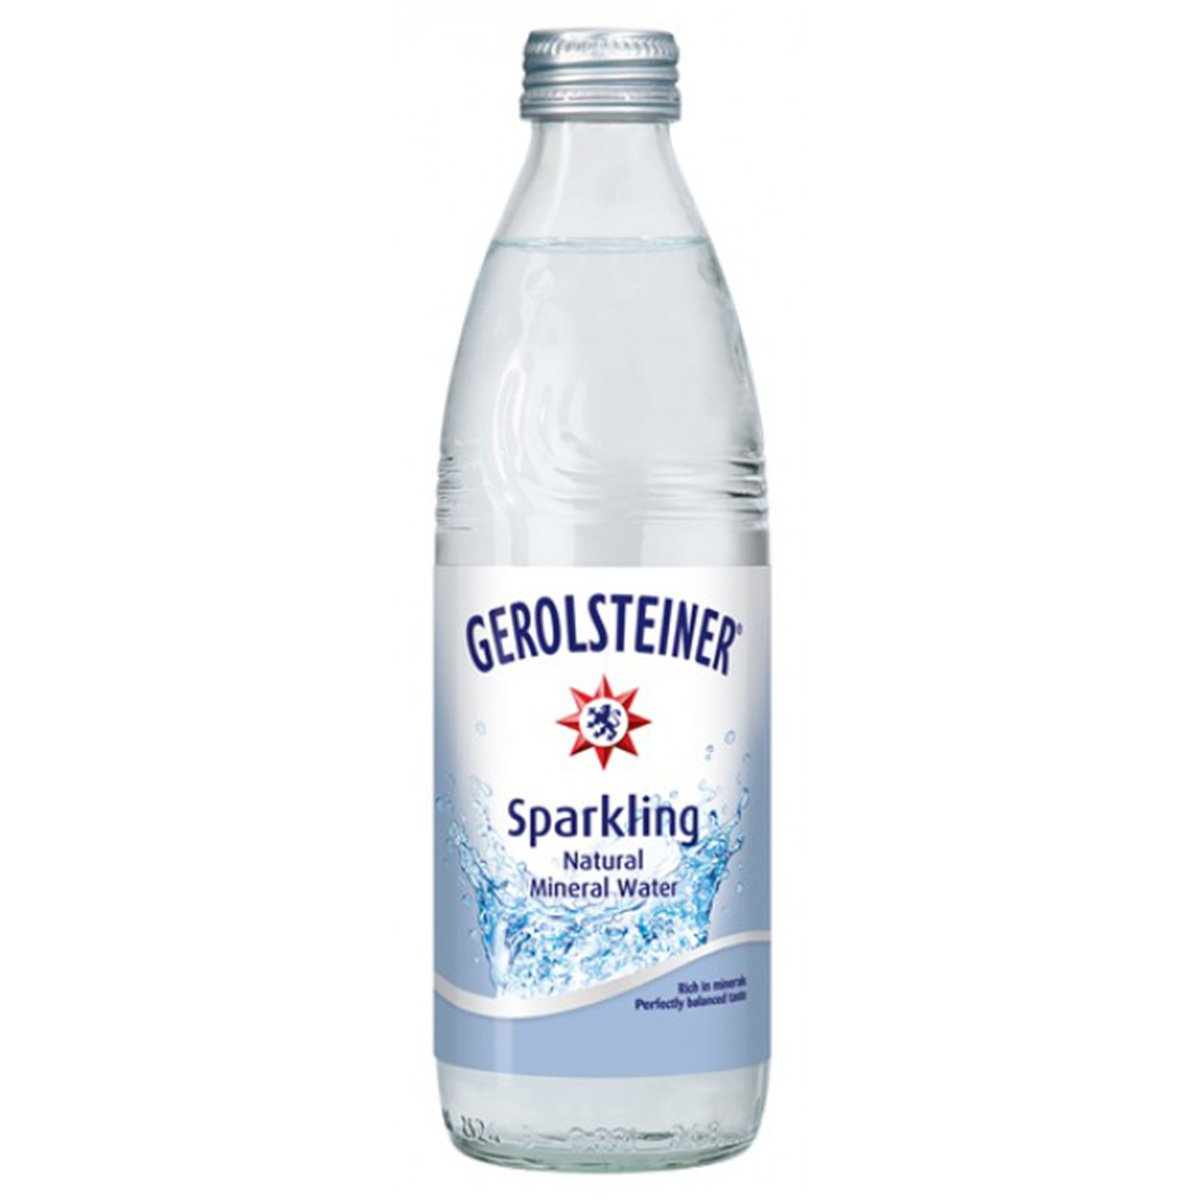 Gerolsteiner Sparkling Natural Mineral Water 330 ml